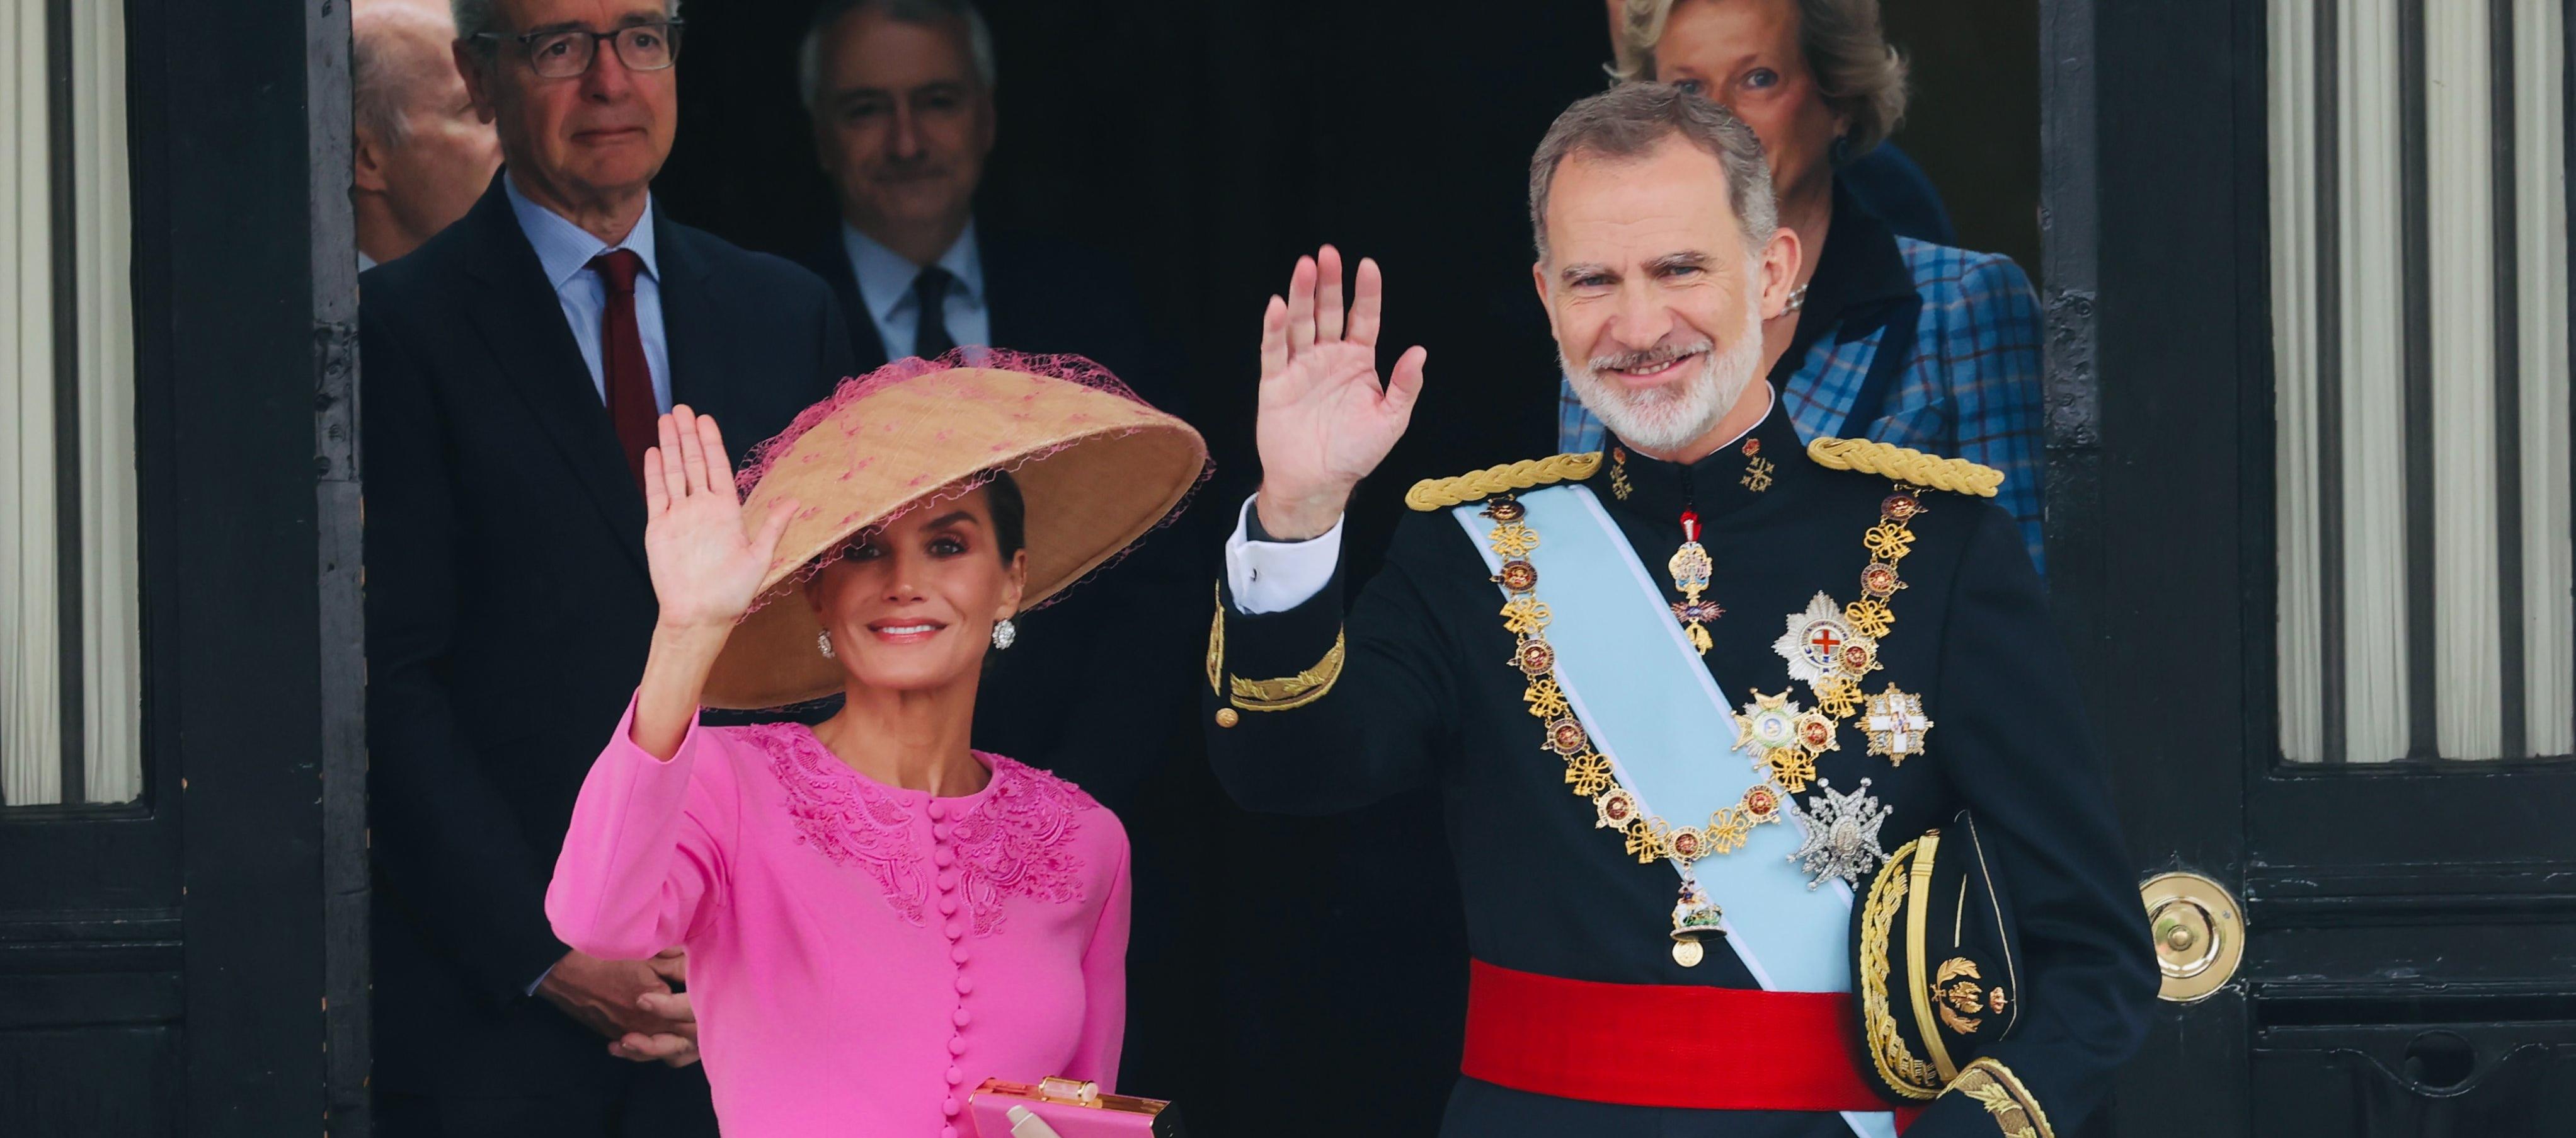 La reina Letizia llevó un vestido diseñado por Carolina Herrera. La acompaña el rey Felipe VI